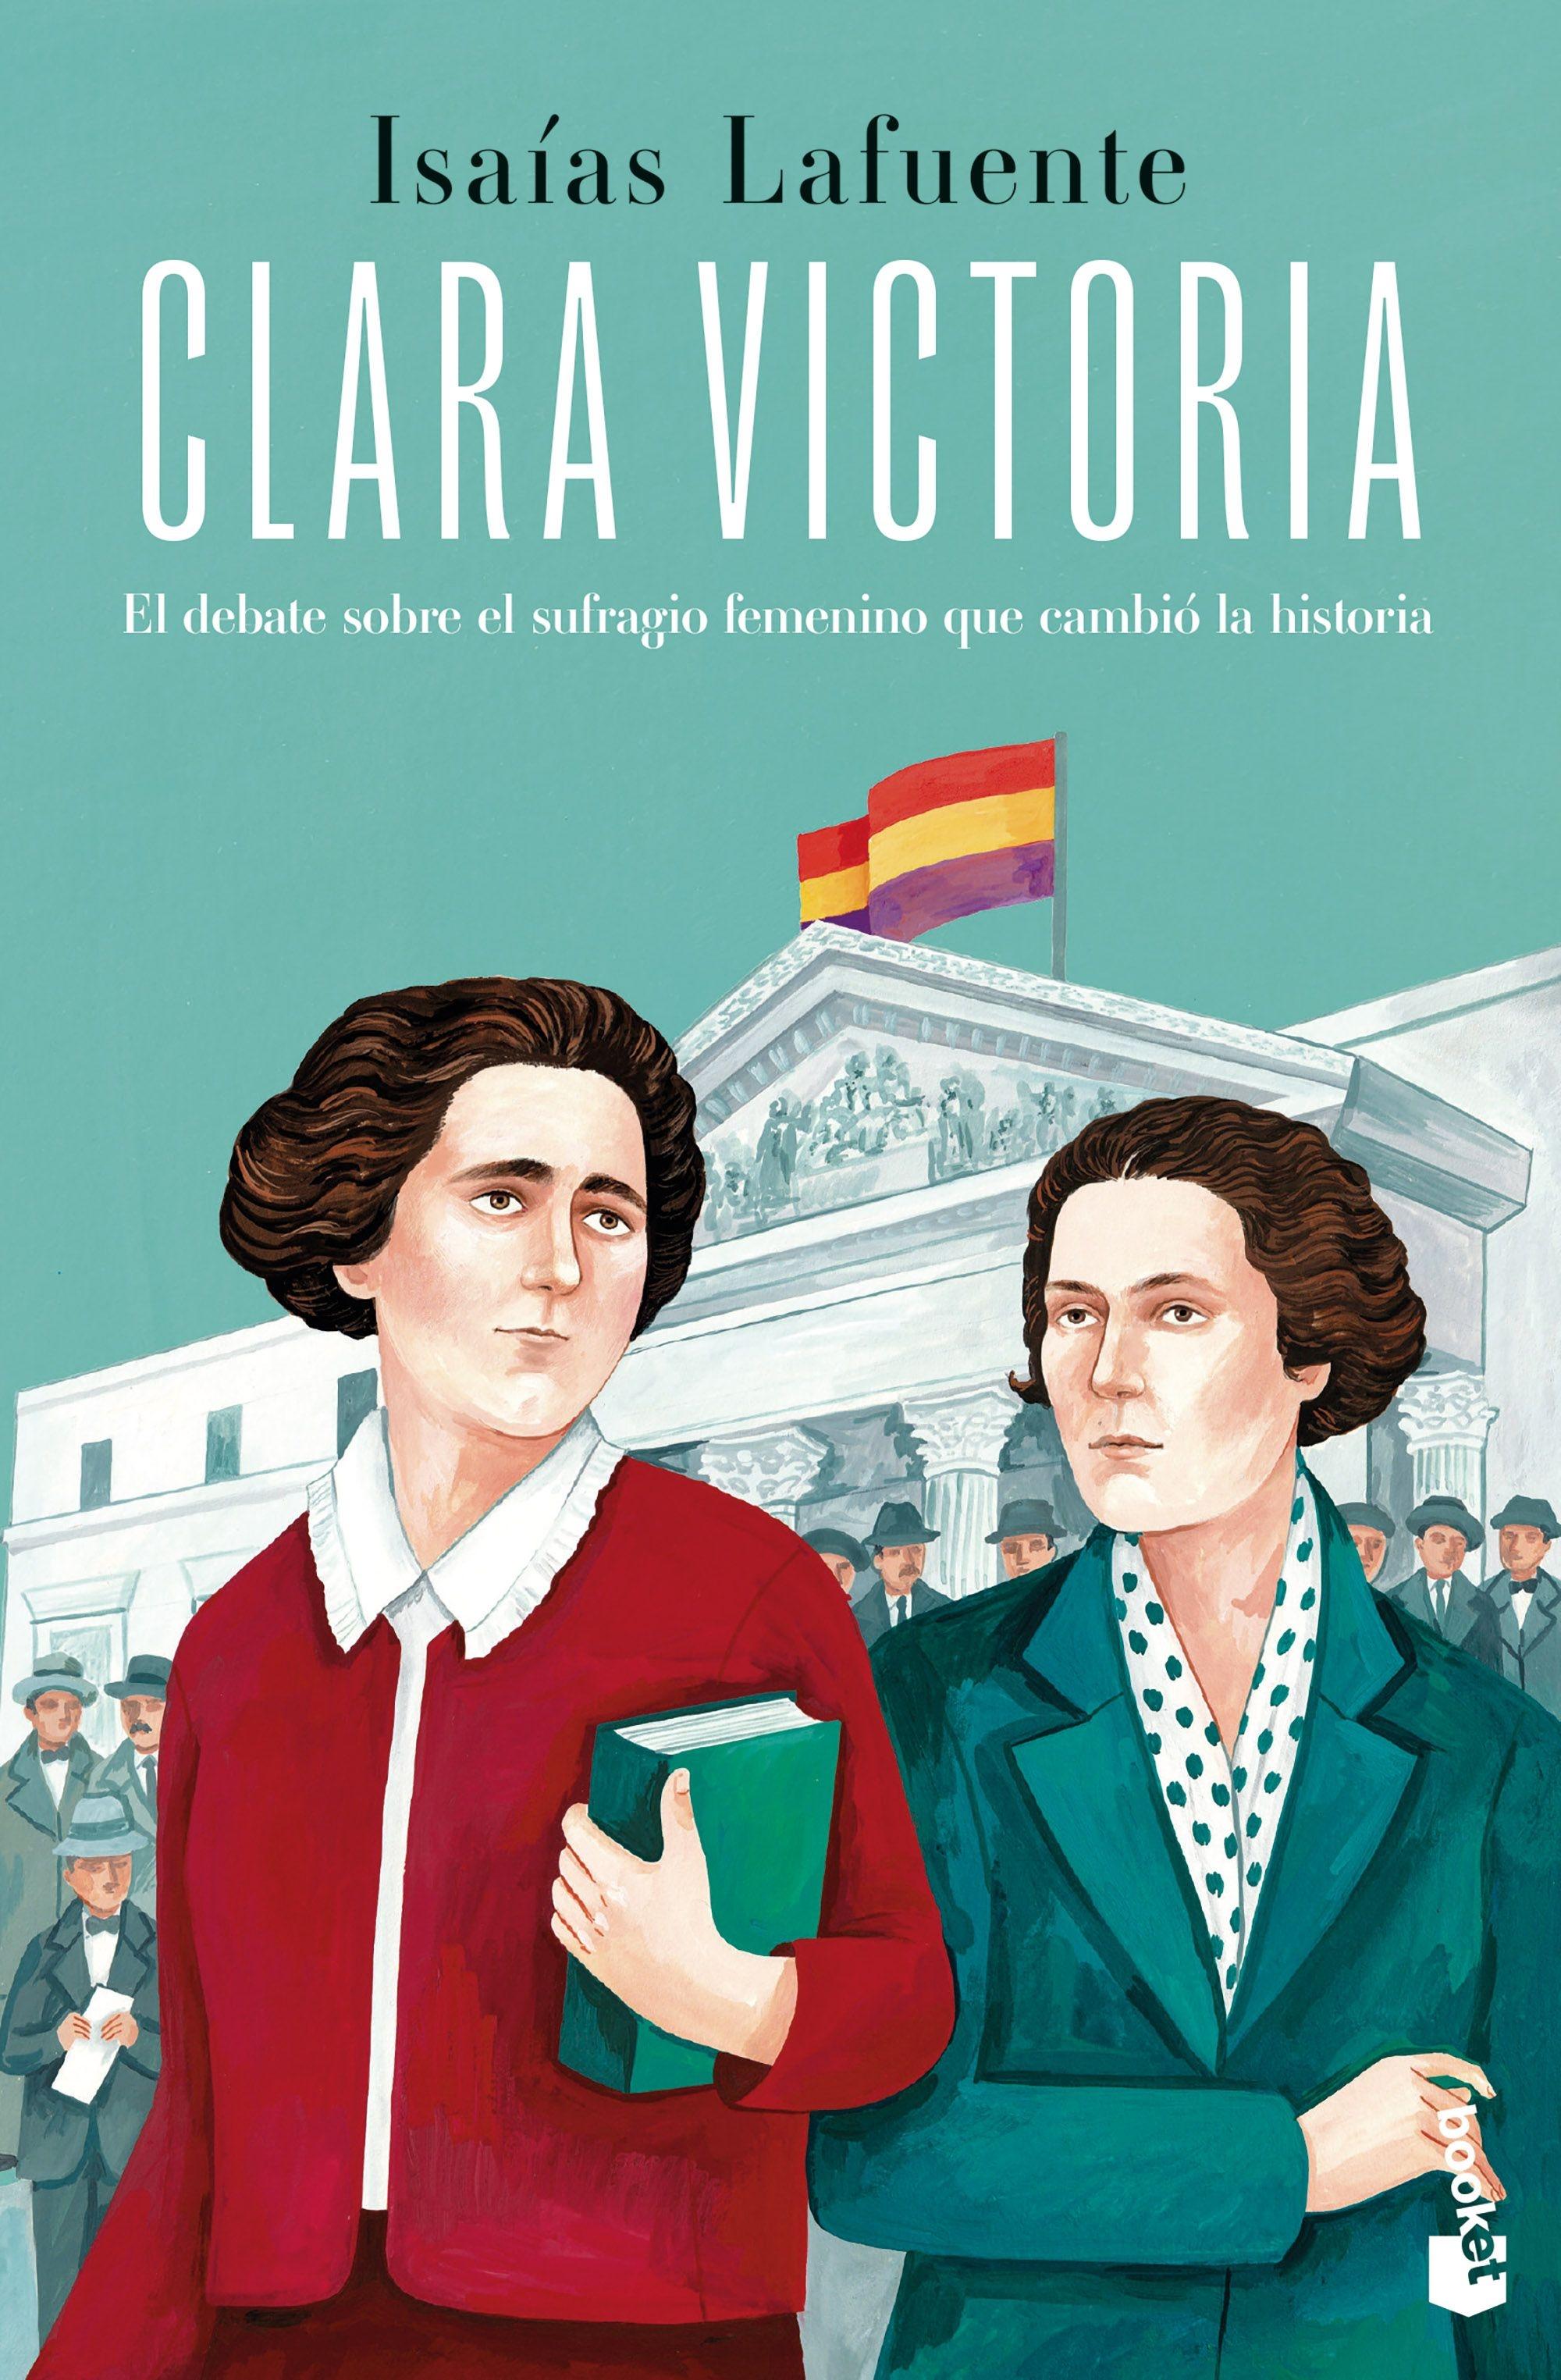 Clara Victoria "El debate sobre el sufragio femenino que cambió la historia"